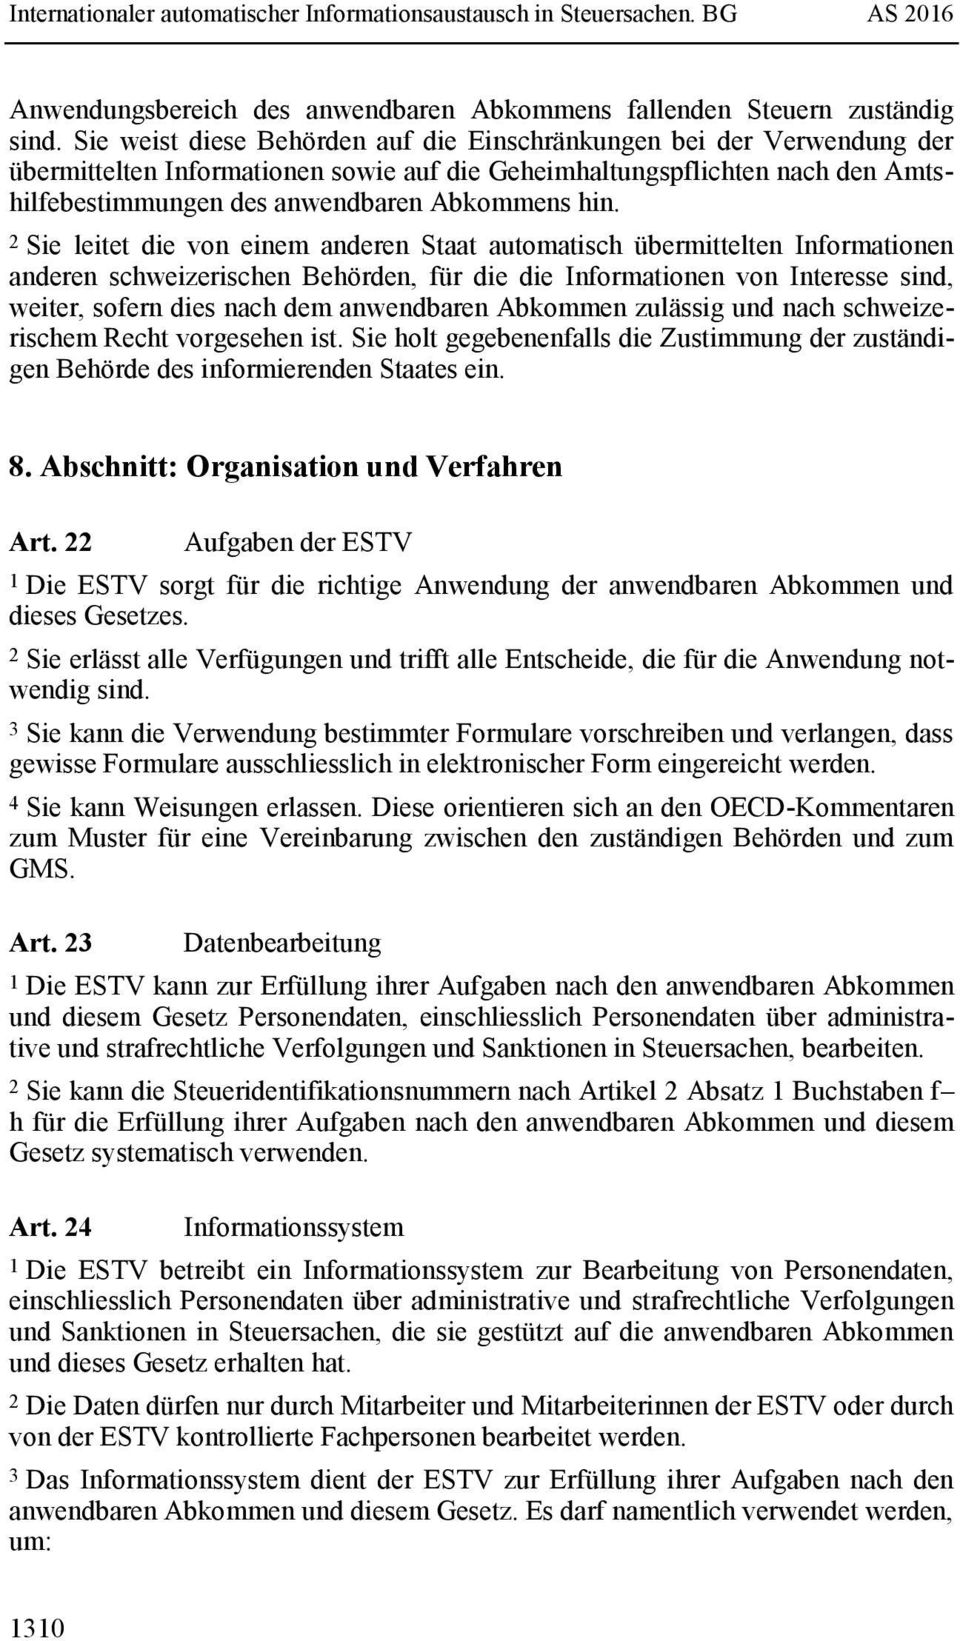 2 Sie leitet die von einem anderen Staat automatisch übermittelten Informationen anderen schweizerischen Behörden, für die die Informationen von Interesse sind, weiter, sofern dies nach dem